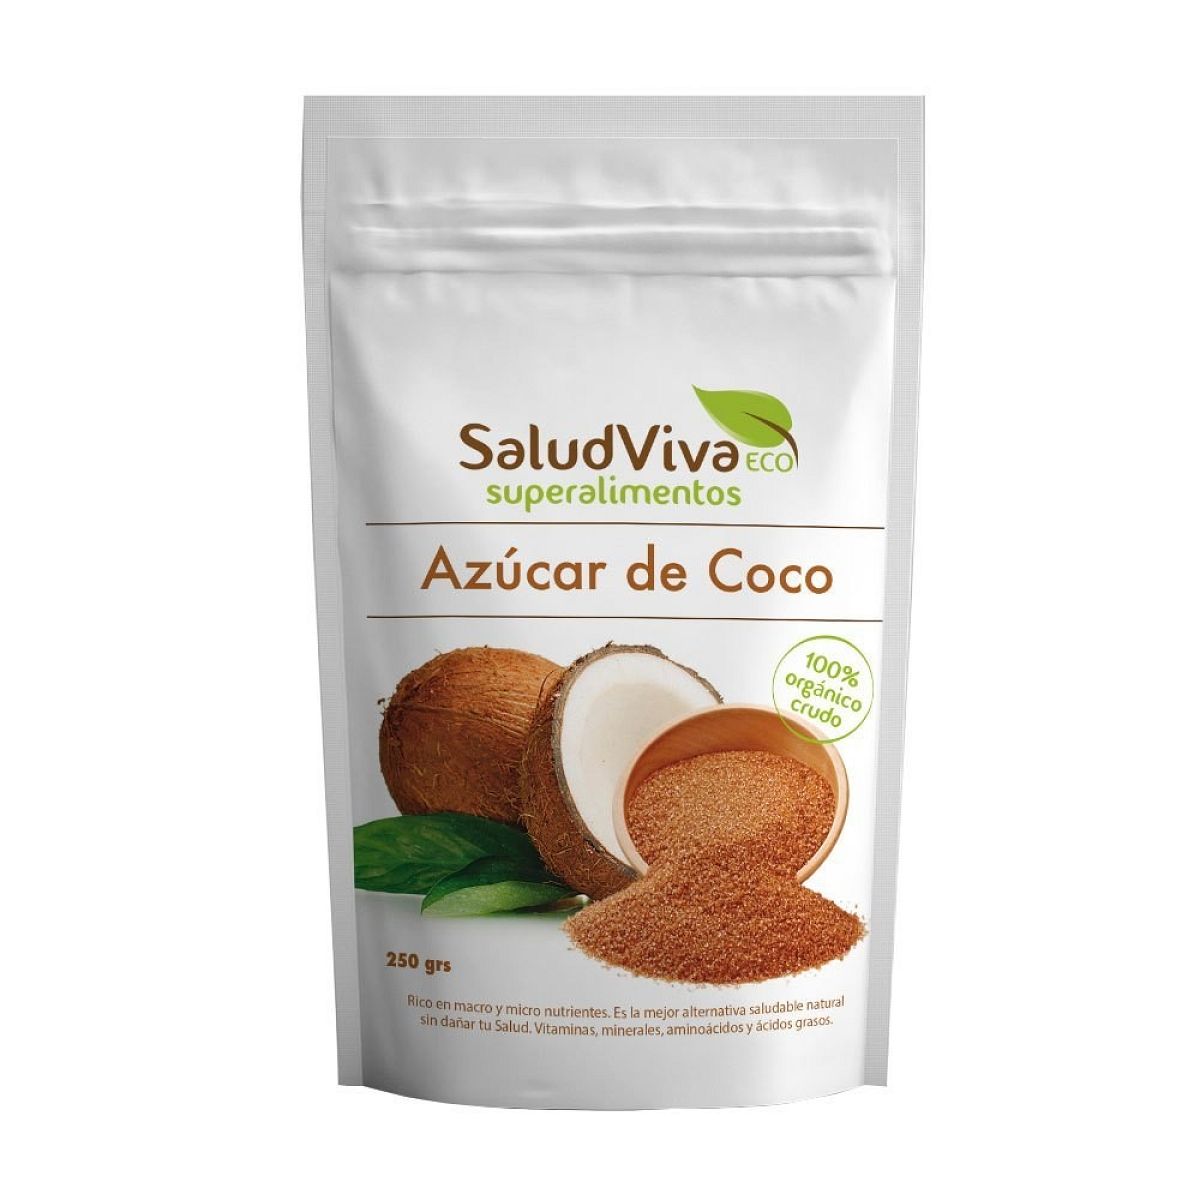 Salud viva - Azúcar de coco 250gr